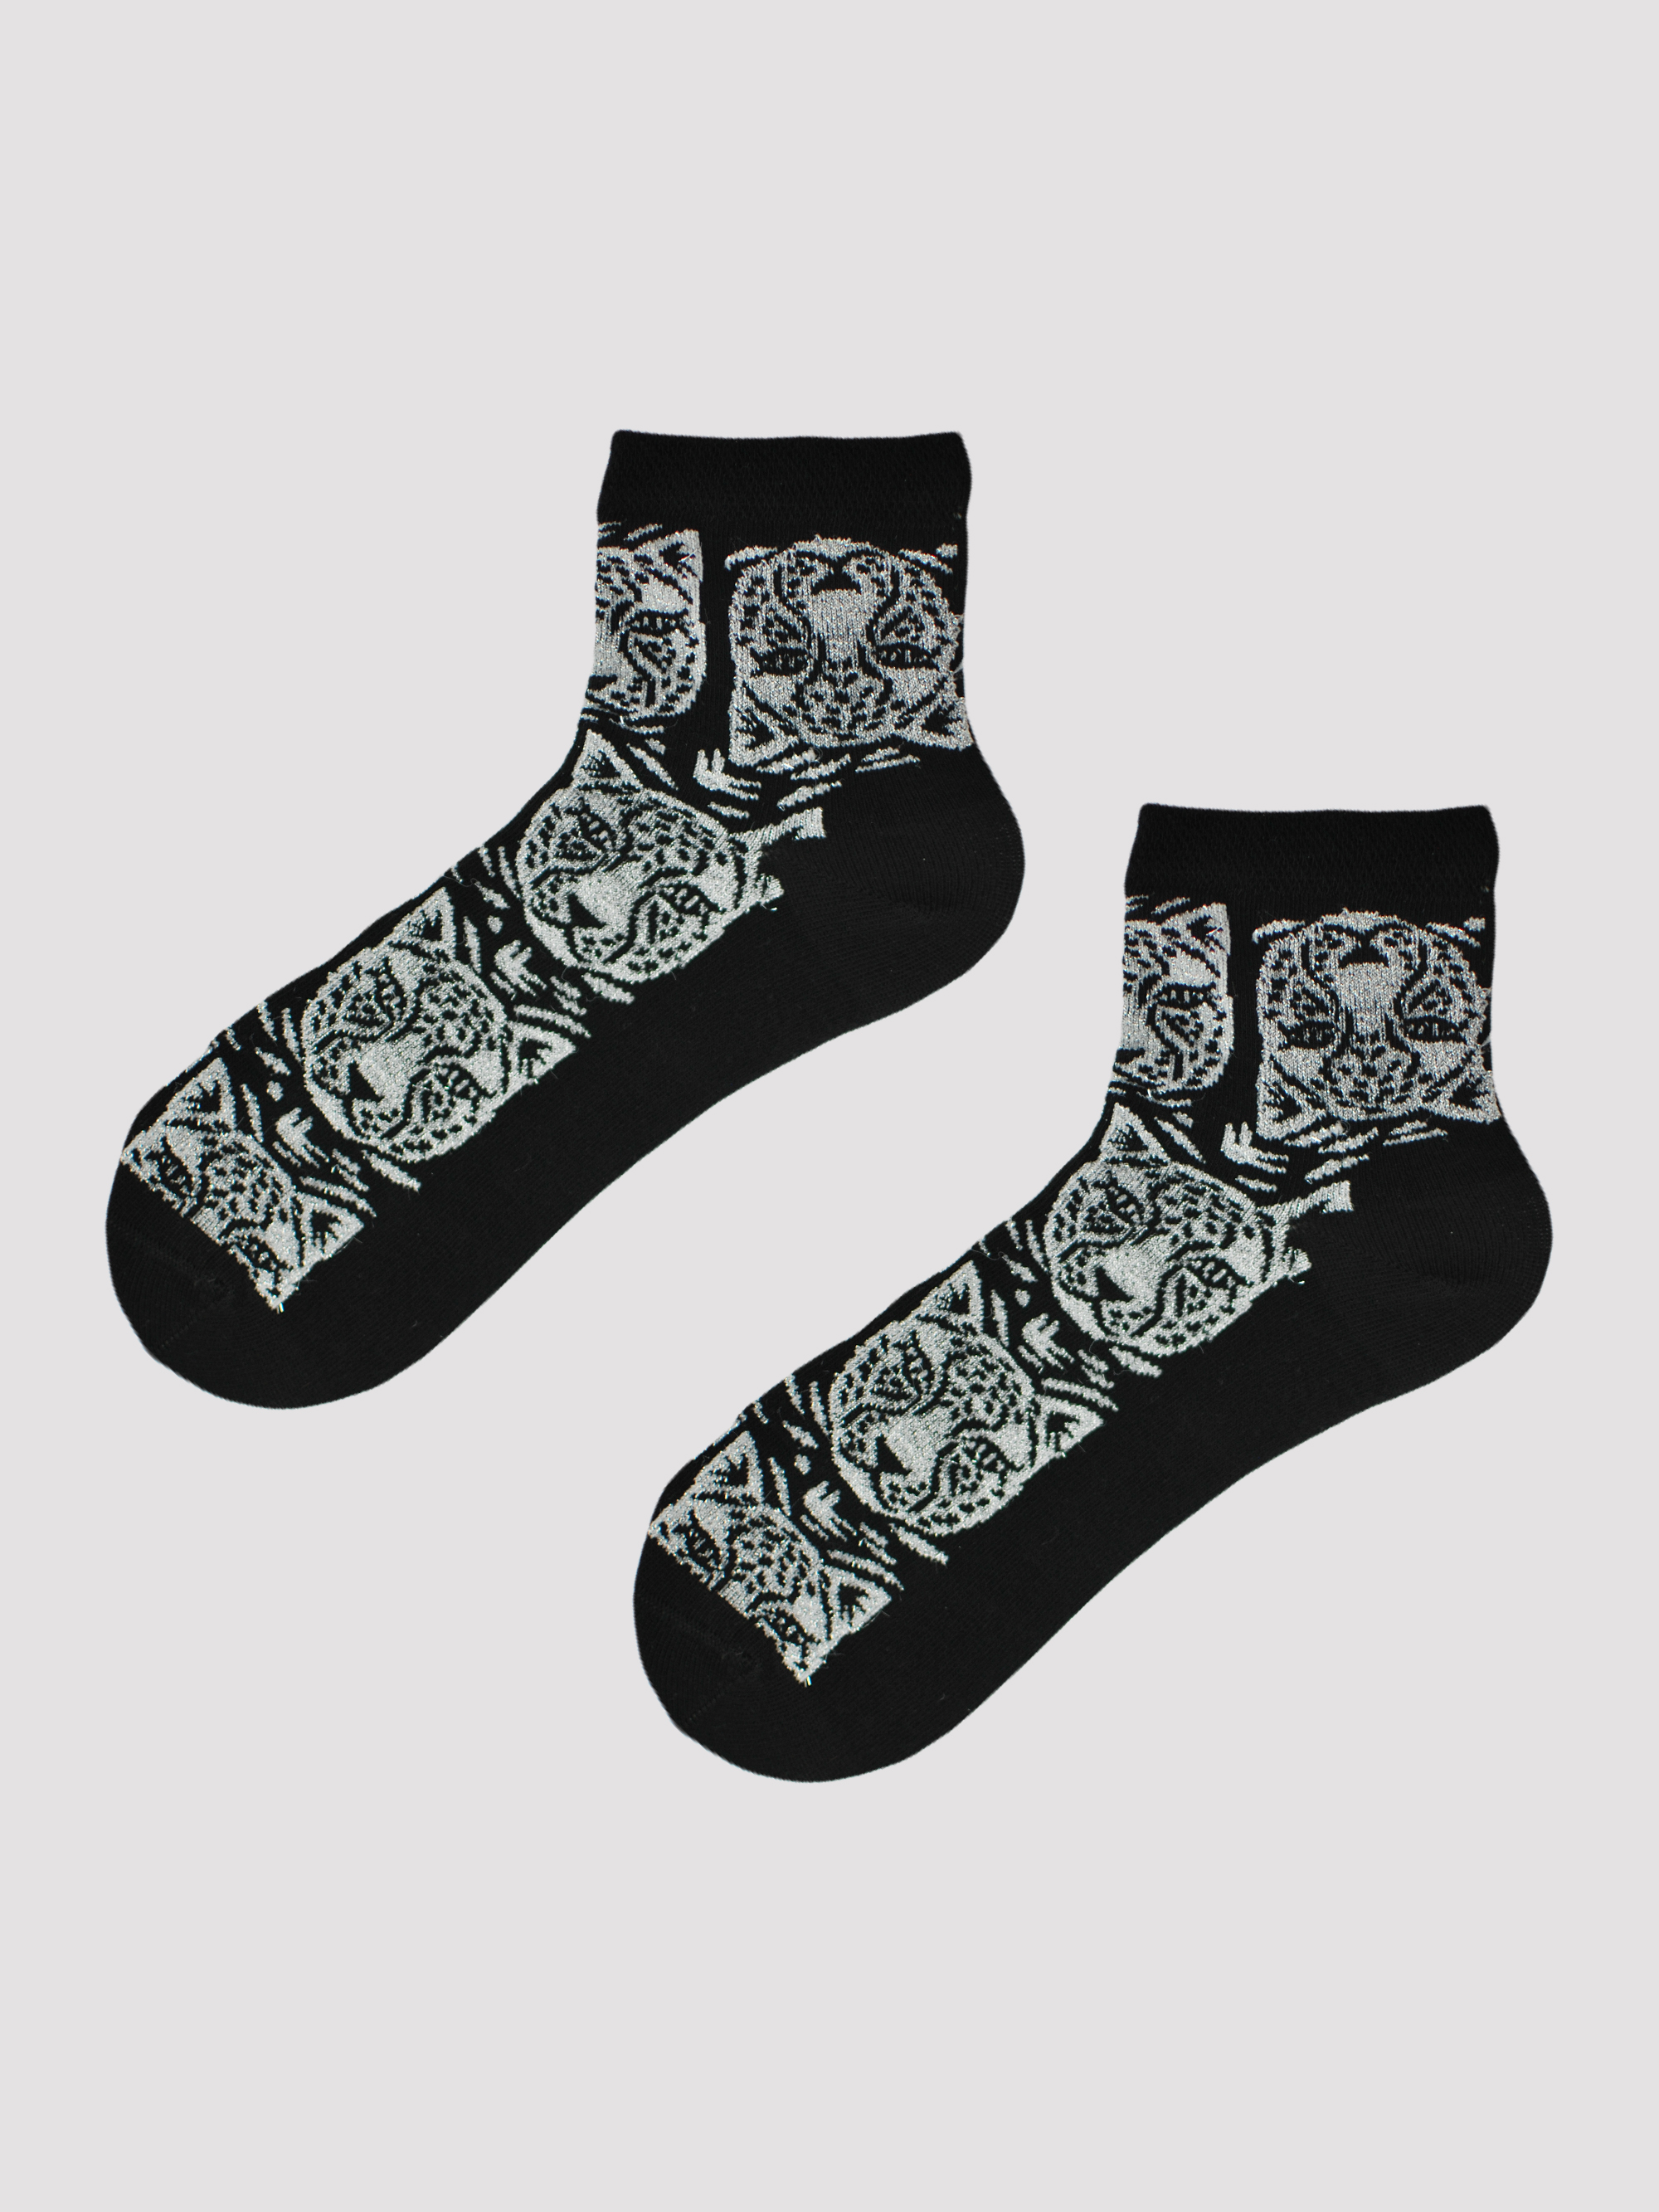 NOVITI Woman's Socks SB025-W-02